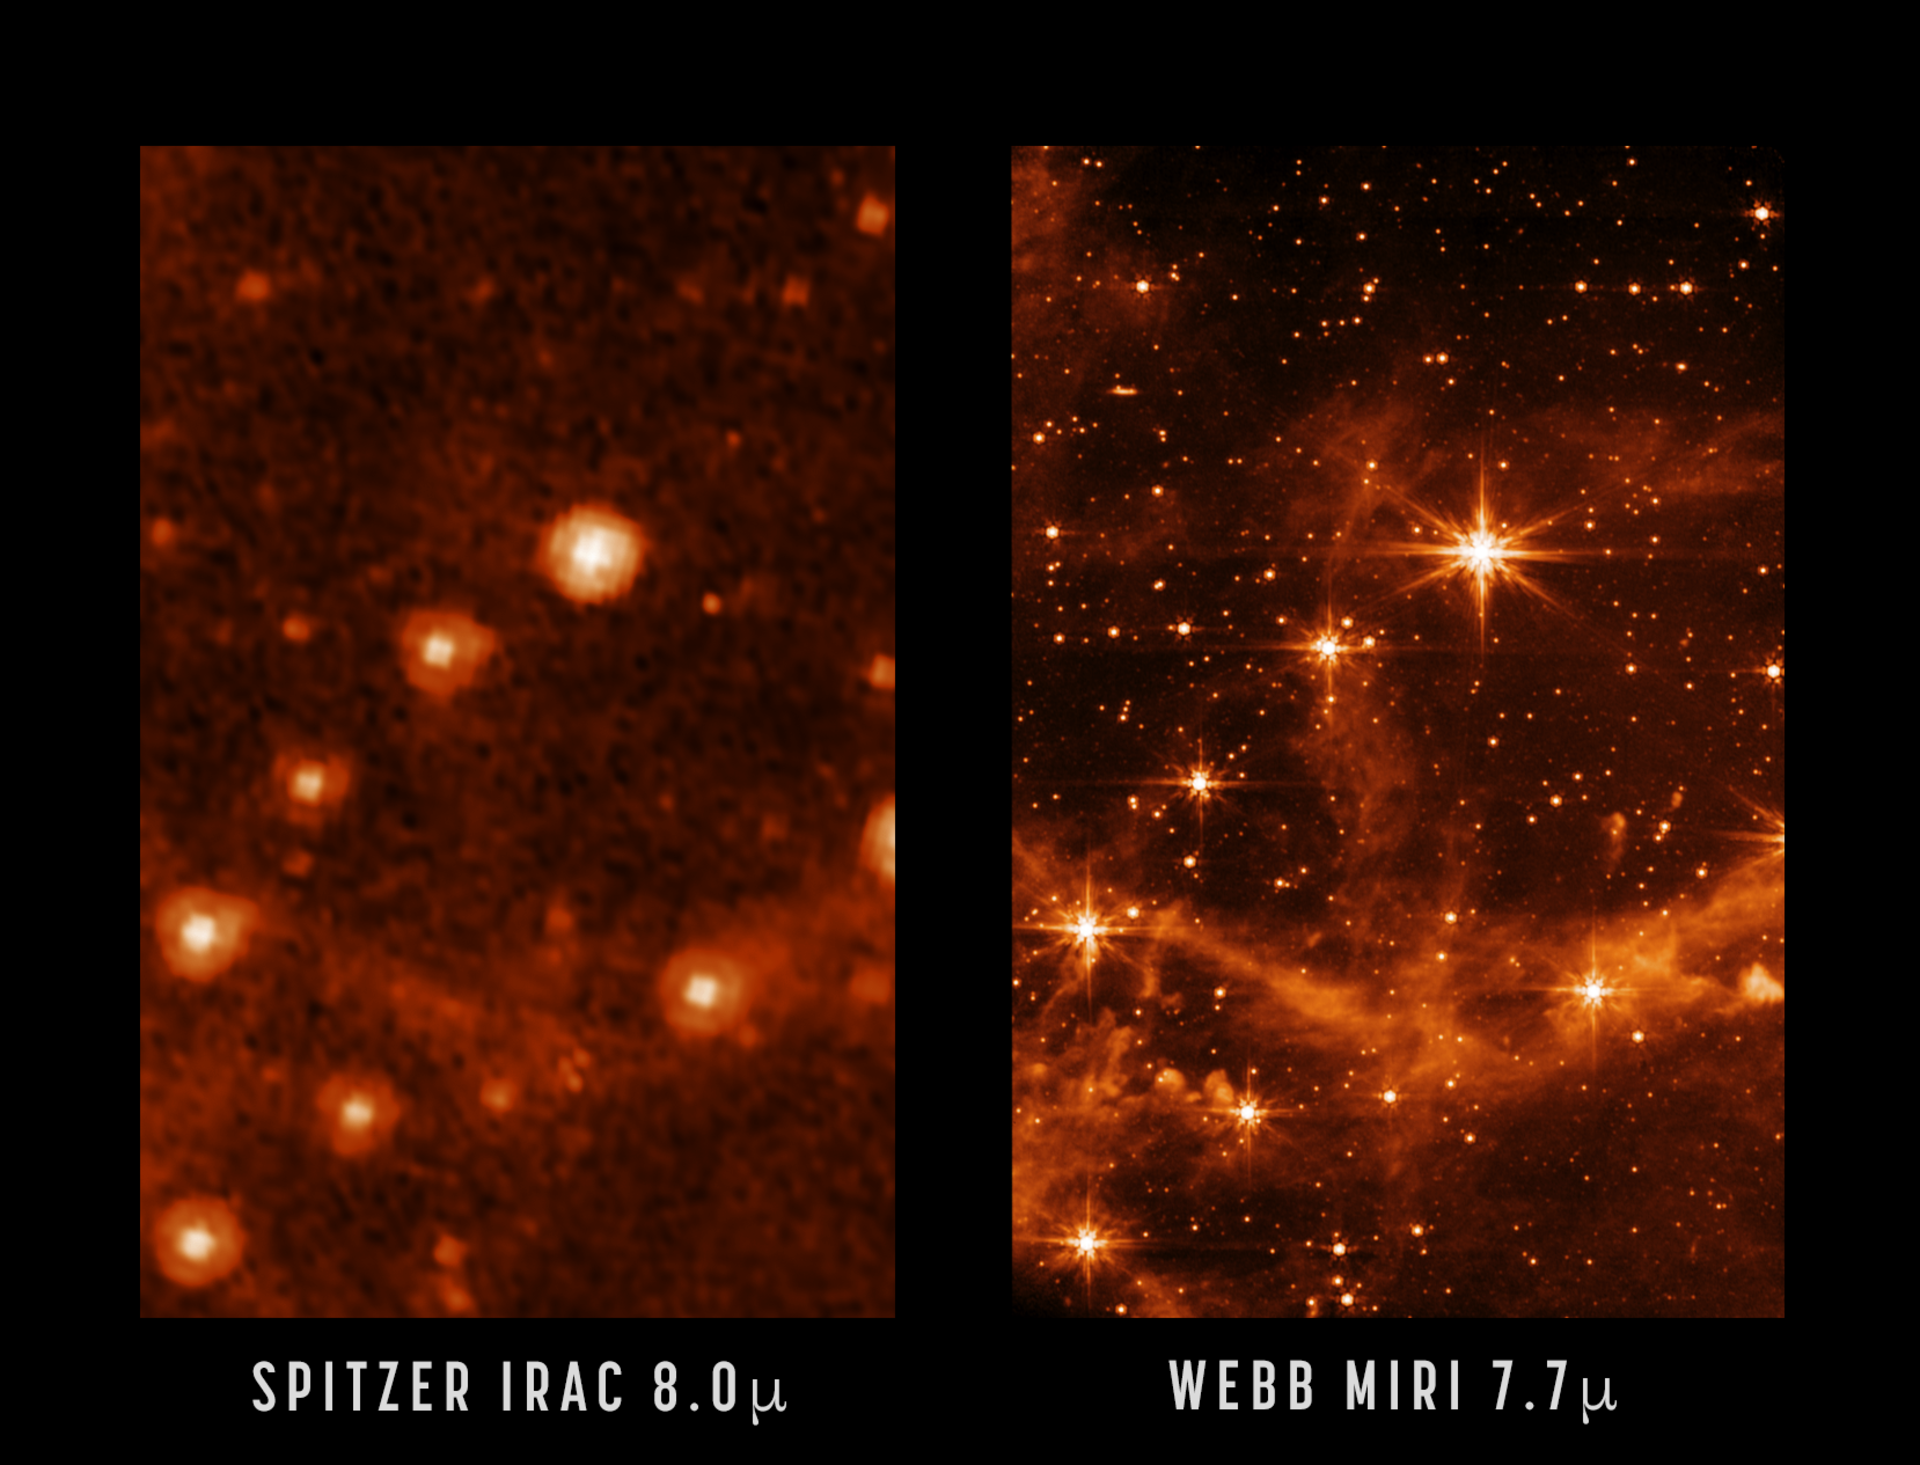 詹姆斯·韦伯空间望远镜与斯皮策空间望远镜拍摄的大麦哲伦星系